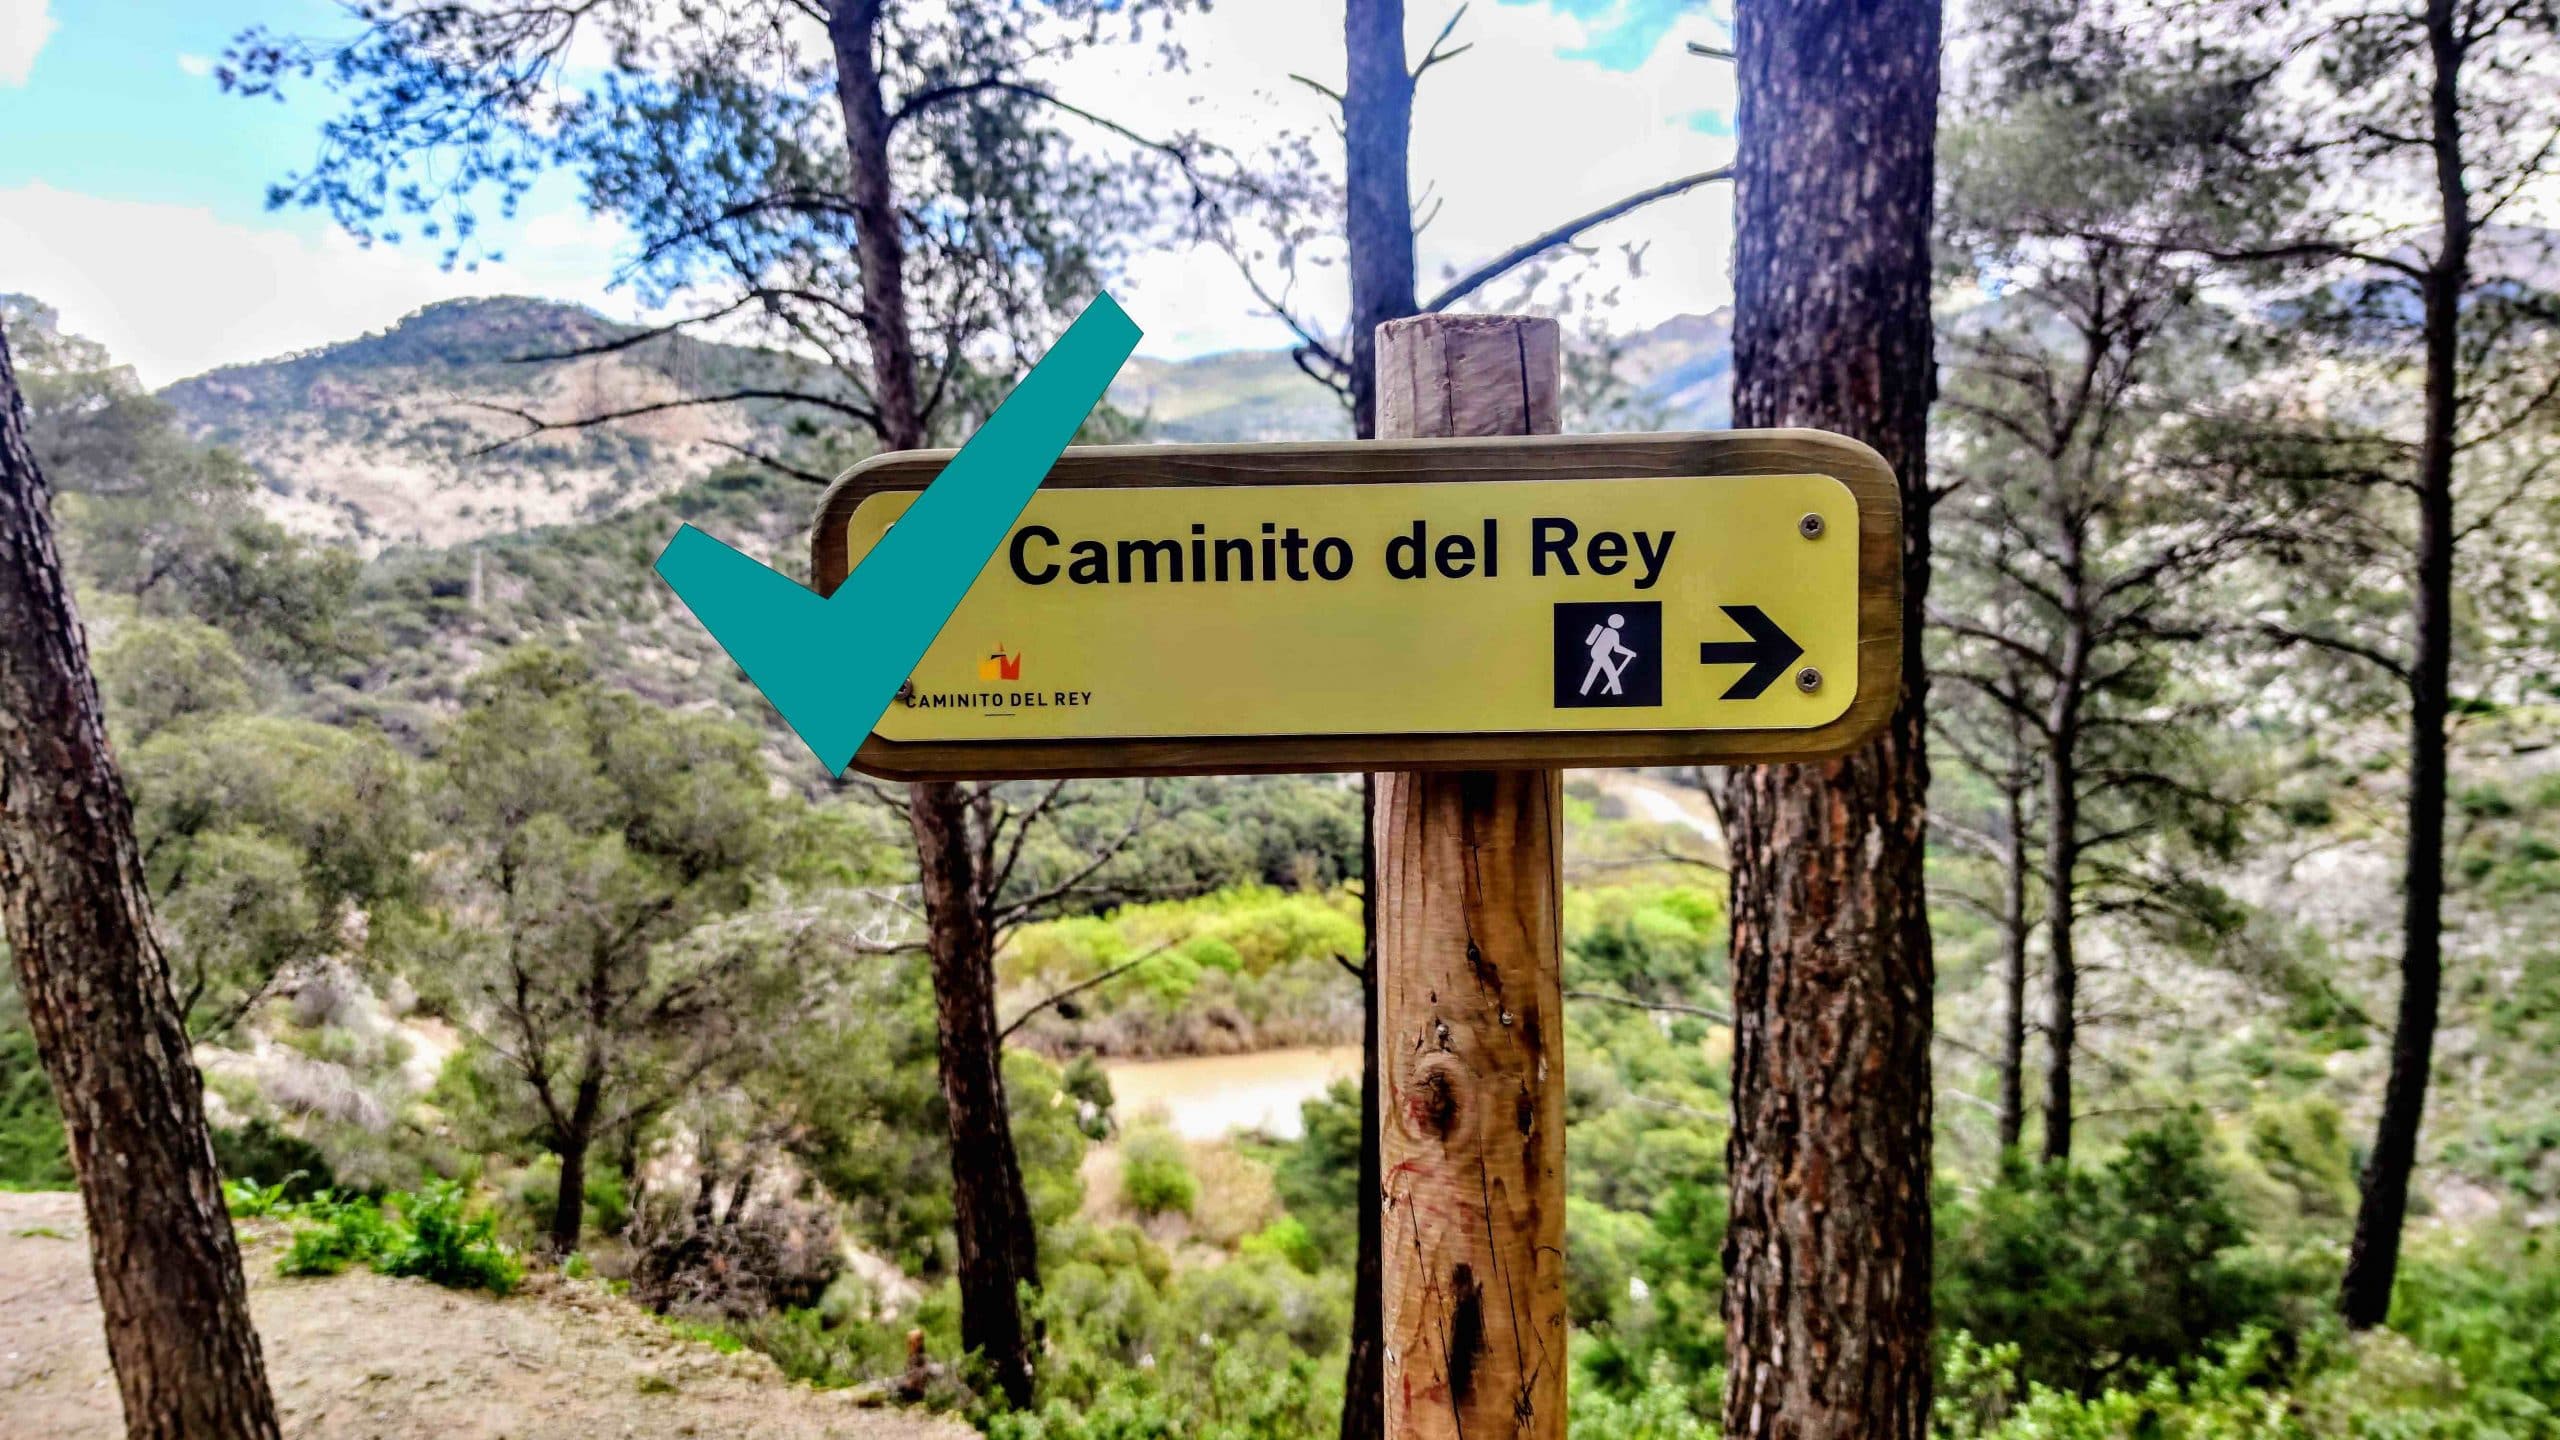 Caminito_del_rey_Check-scaled